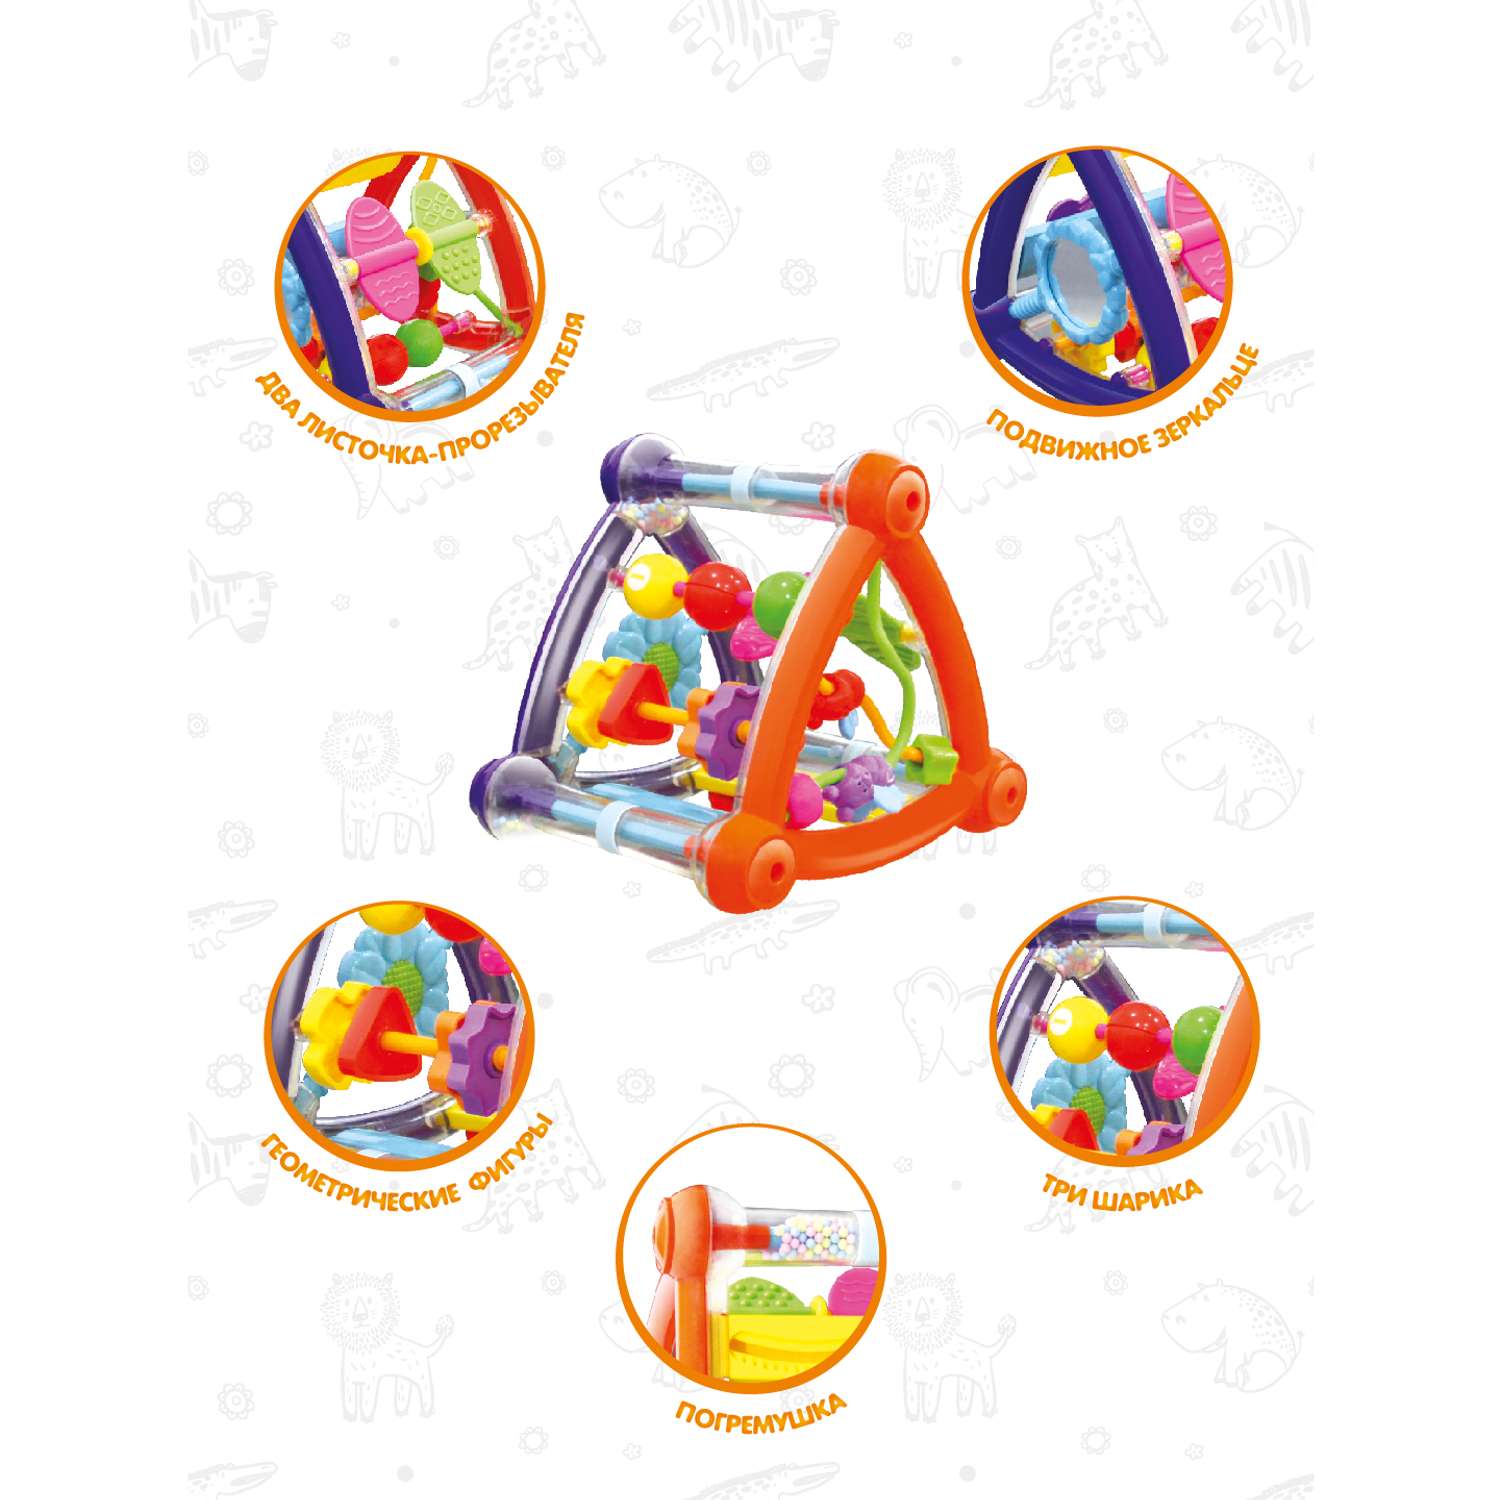 Бизиборд для малышей Levatoys развивающая игрушка Пирамидка 5 игровых зон - фото 4